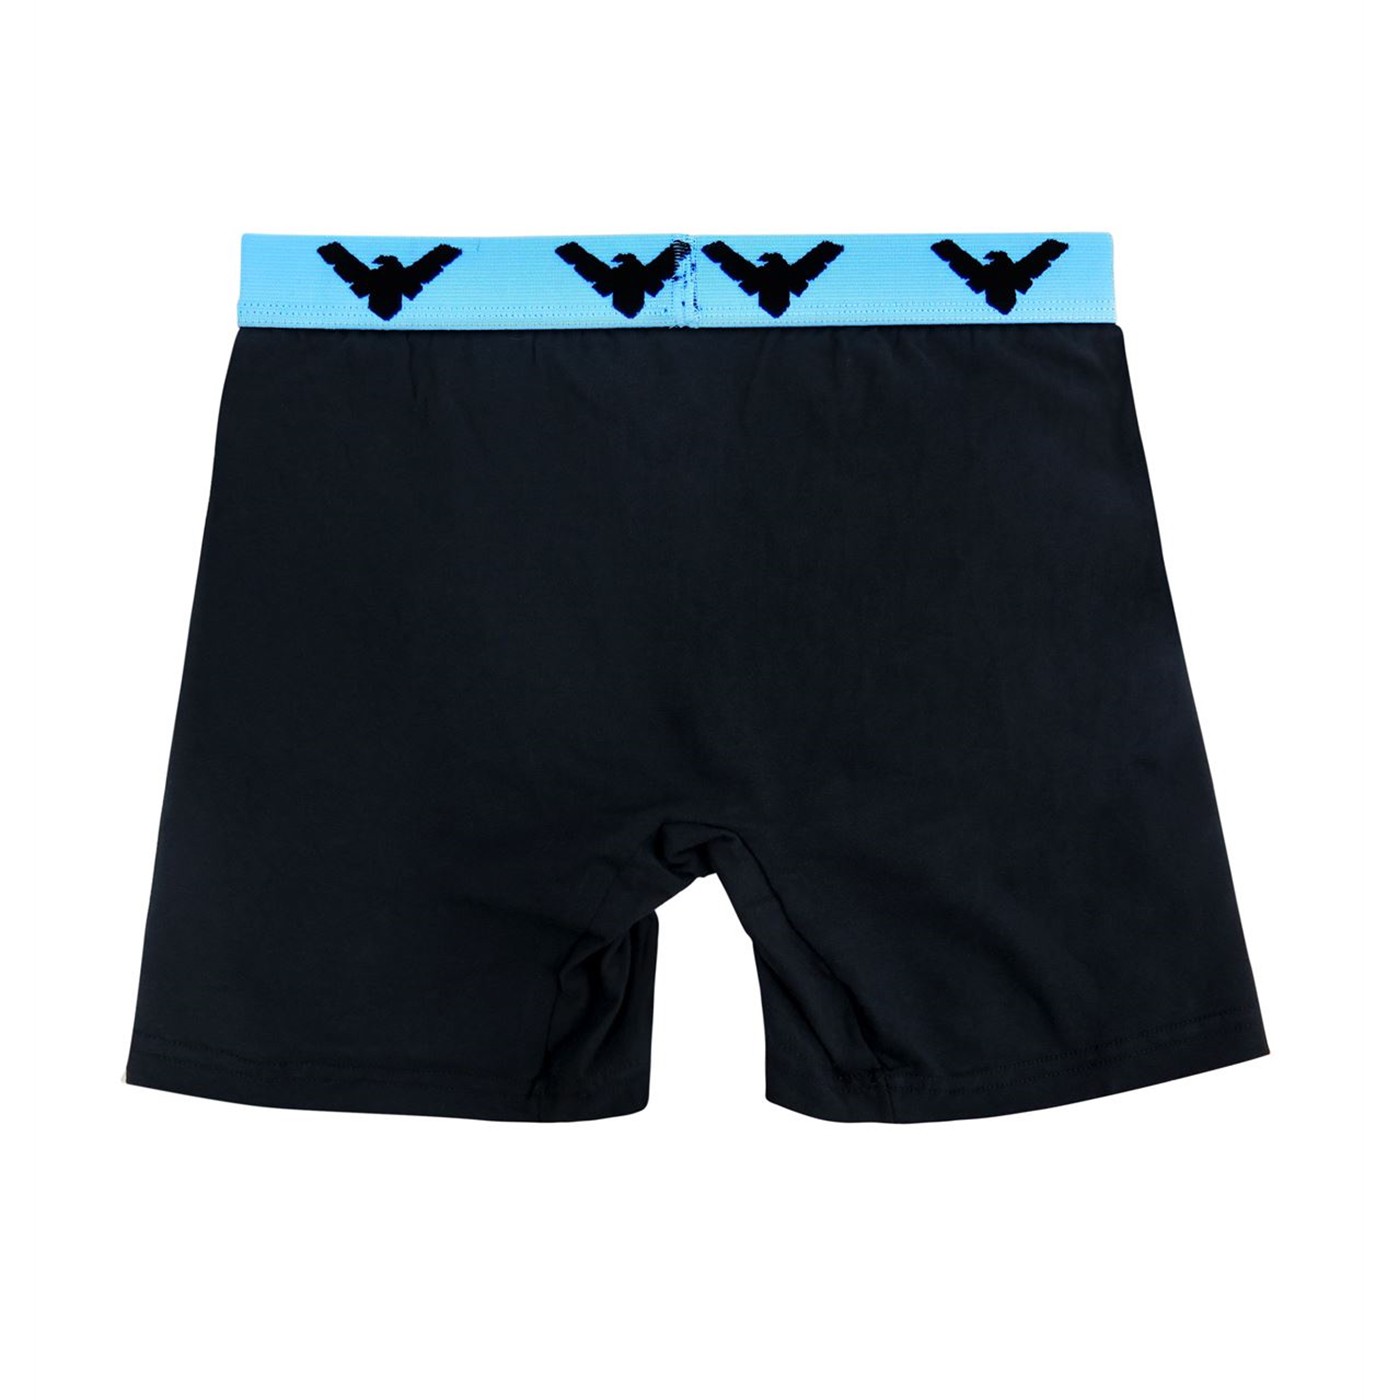 Nightwing Symbol Men's Underwear Fashion Boxer Briefs